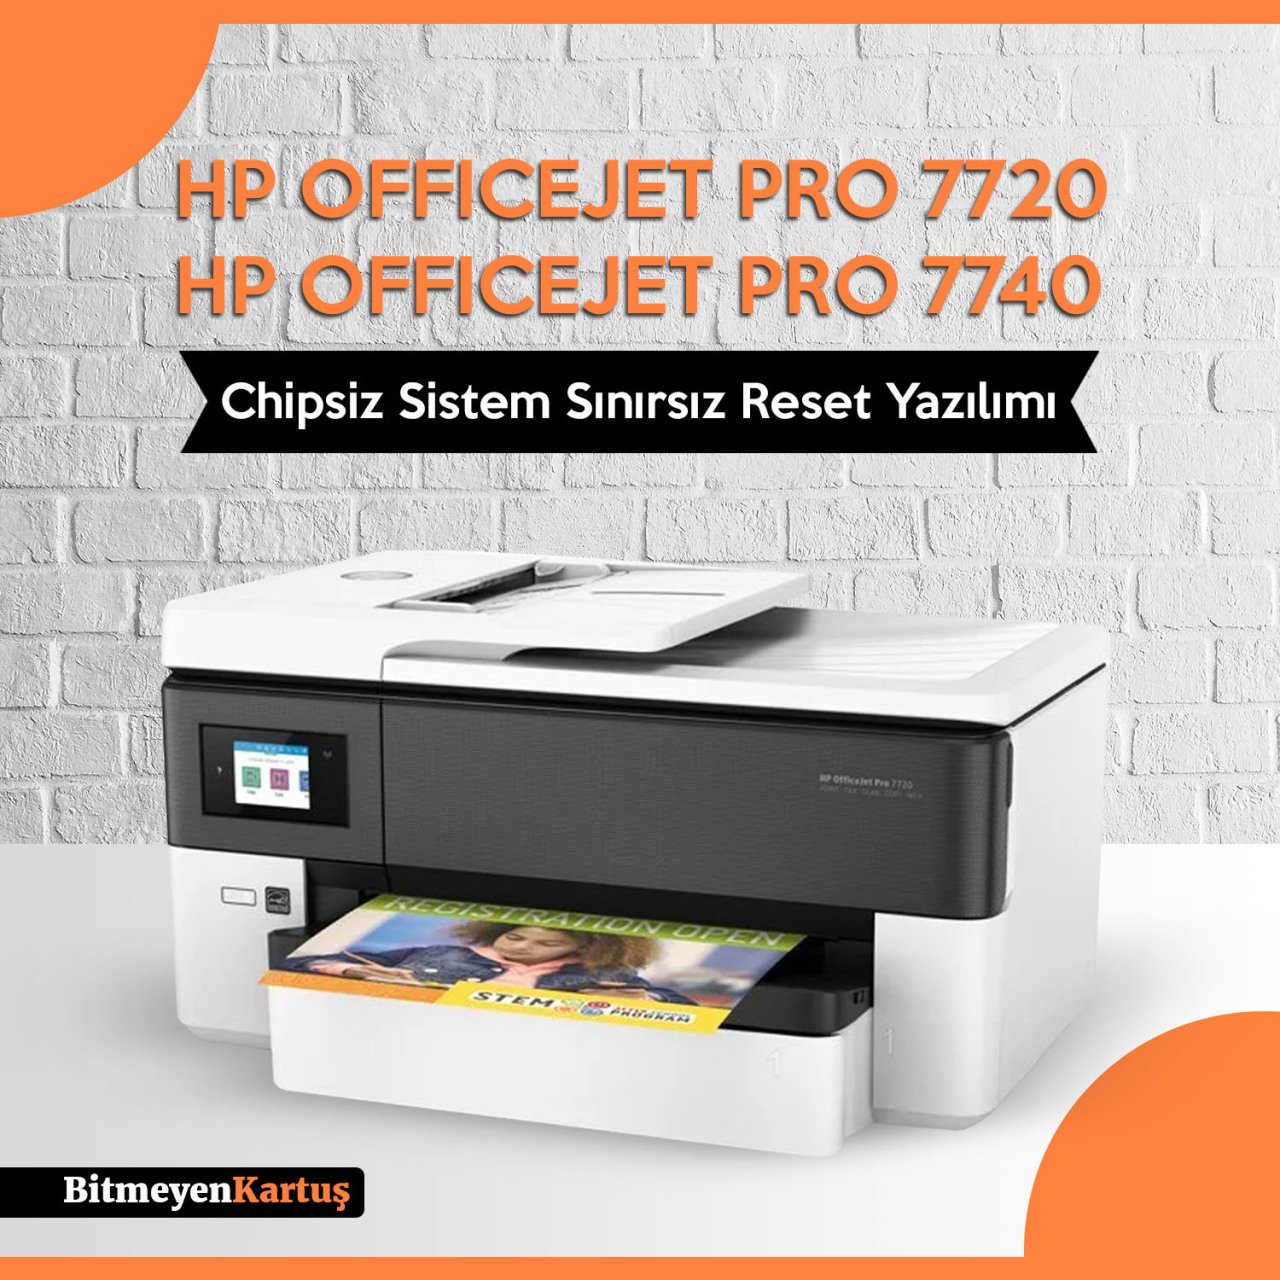 Hp Officejet Pro 7720- 7740 SERİSİ Chipsiz Sistem Sınırsız Reset Yazılımı